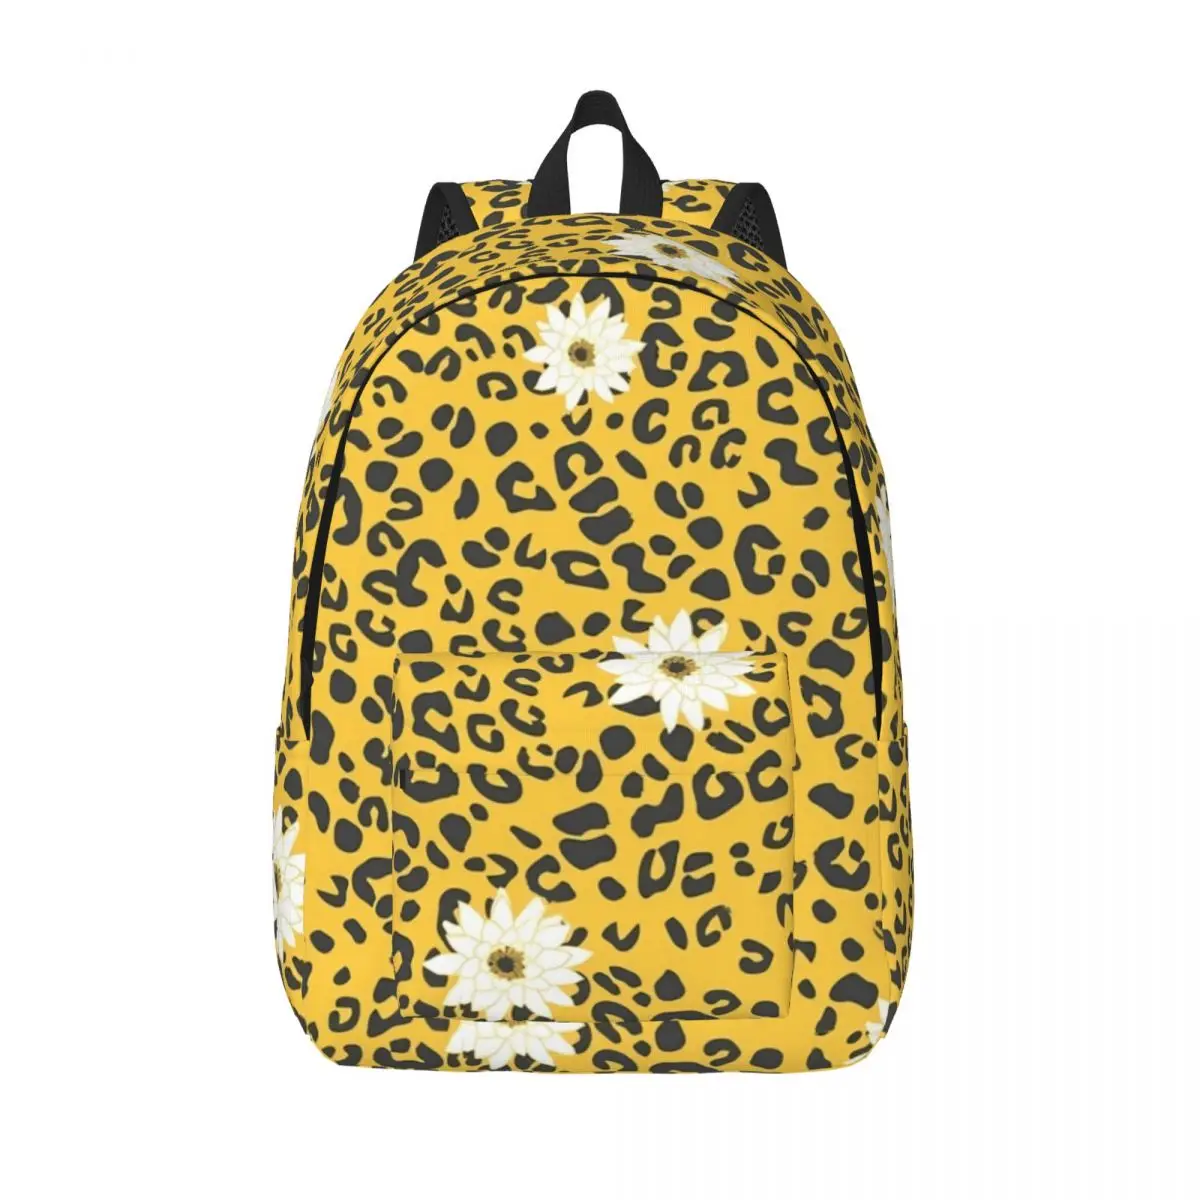 

Рюкзак с цветочным леопардовым принтом, стильные белые рюкзаки для горного туризма, легкие школьные ранцы